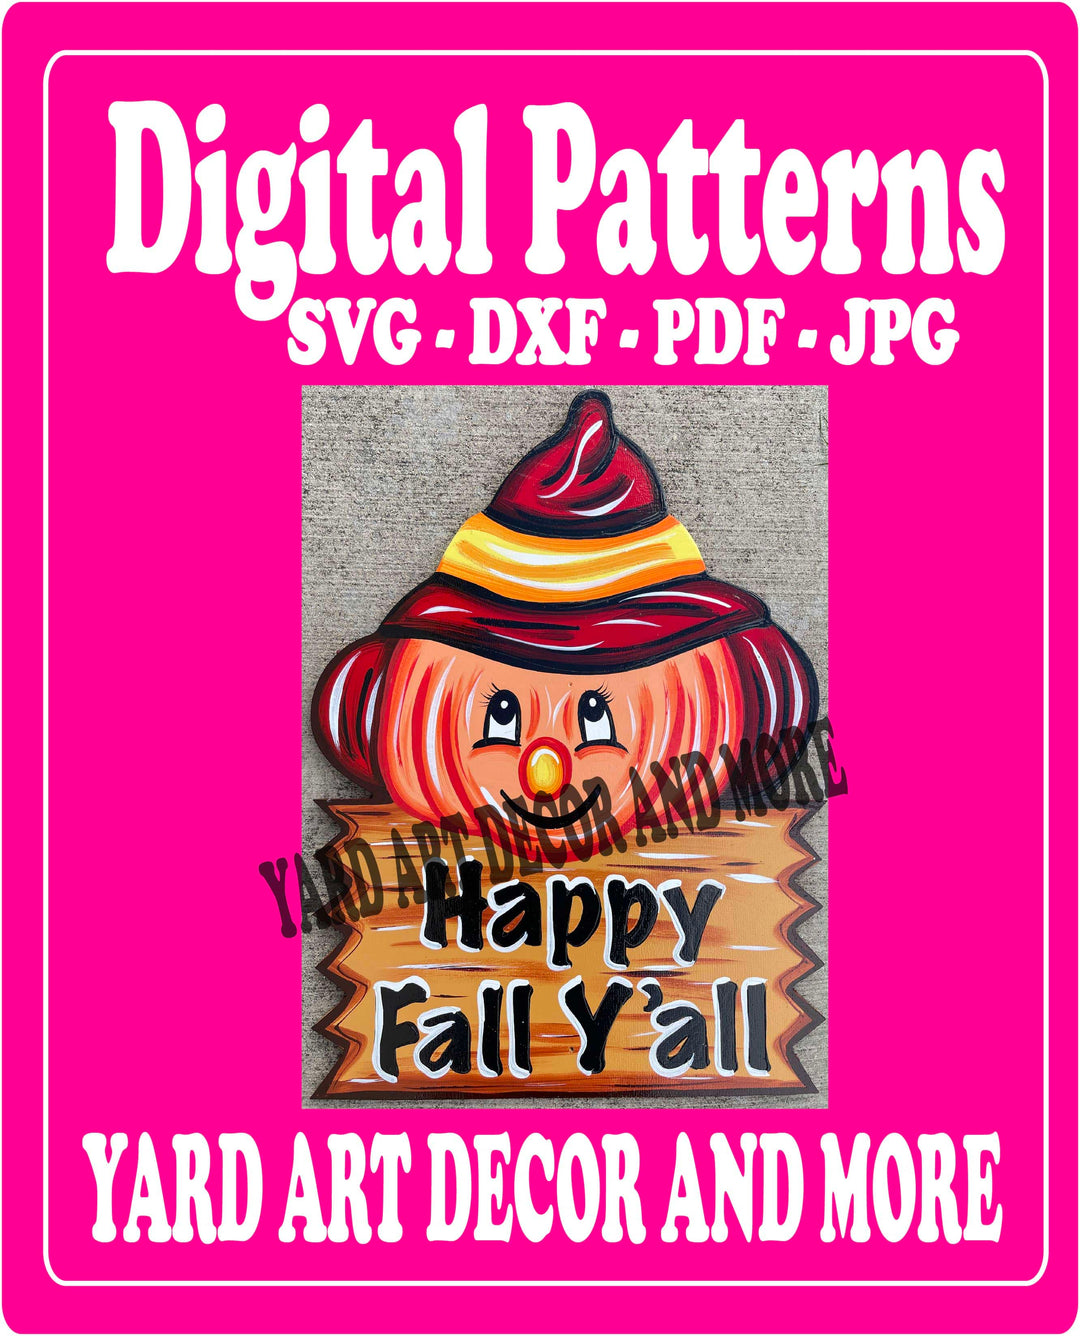 Happy Fall Y'all Pumpkin with Sign Yard Art Decor Digital pattern